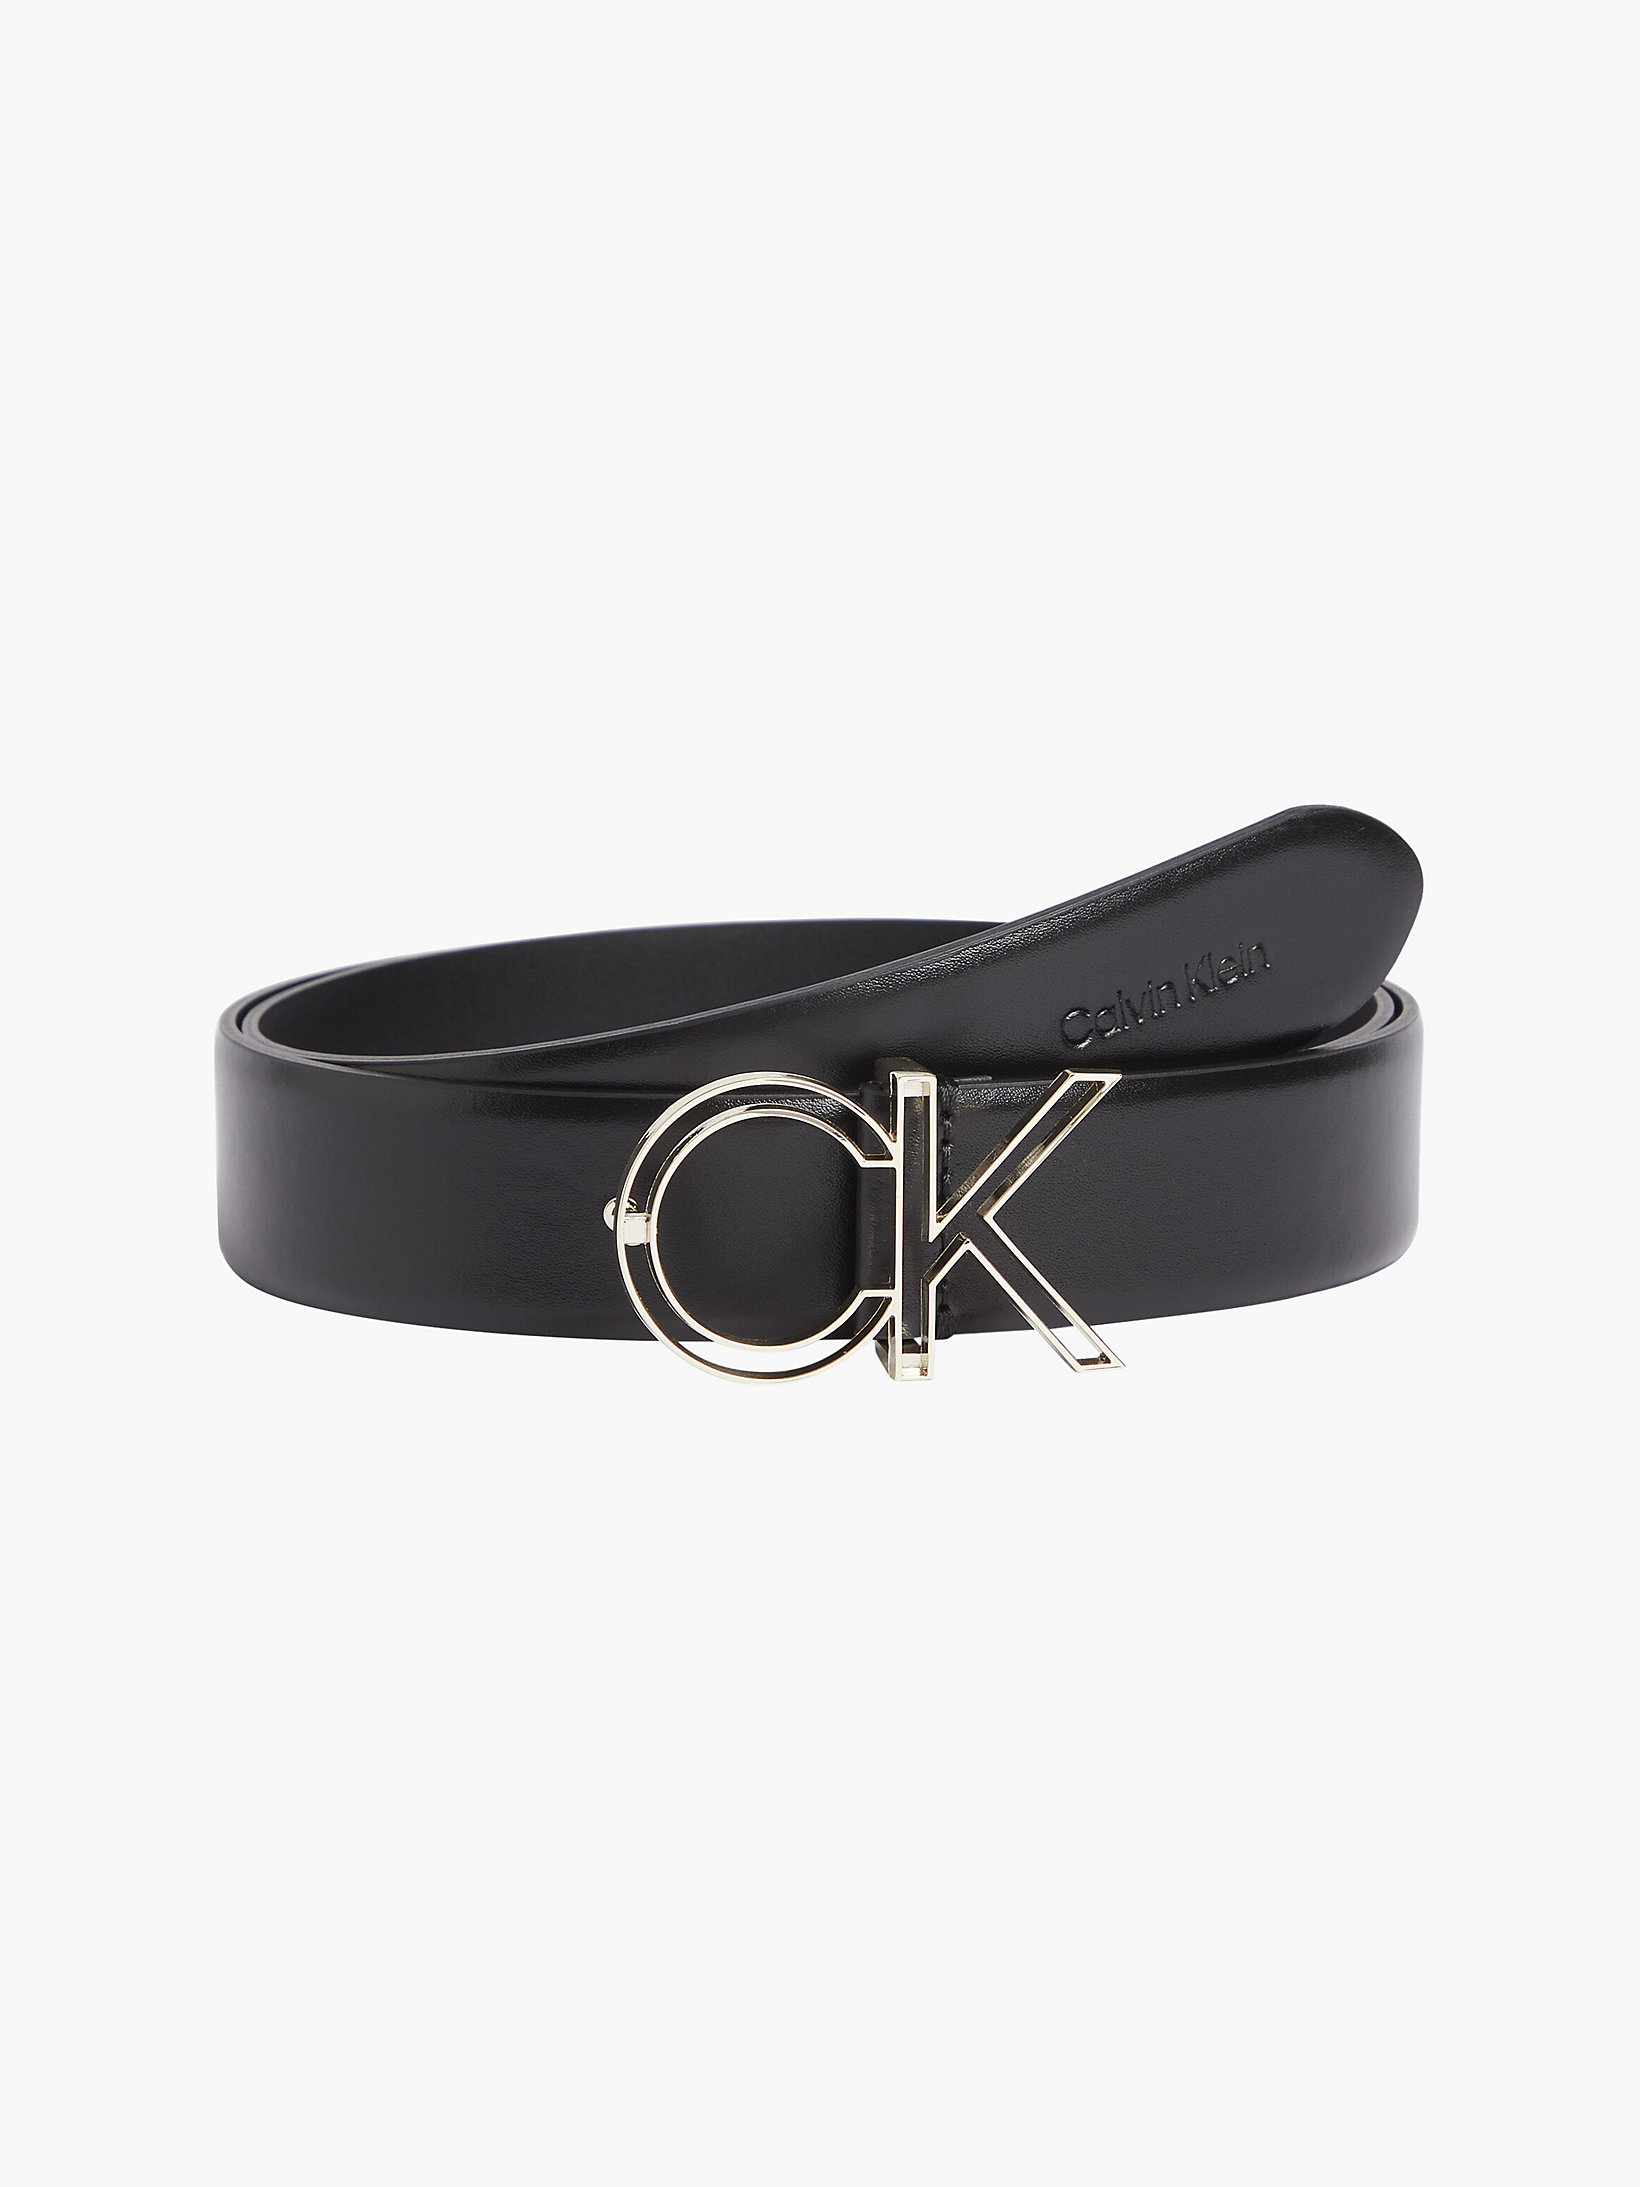 CK Black Leather Belt undefined women Calvin Klein